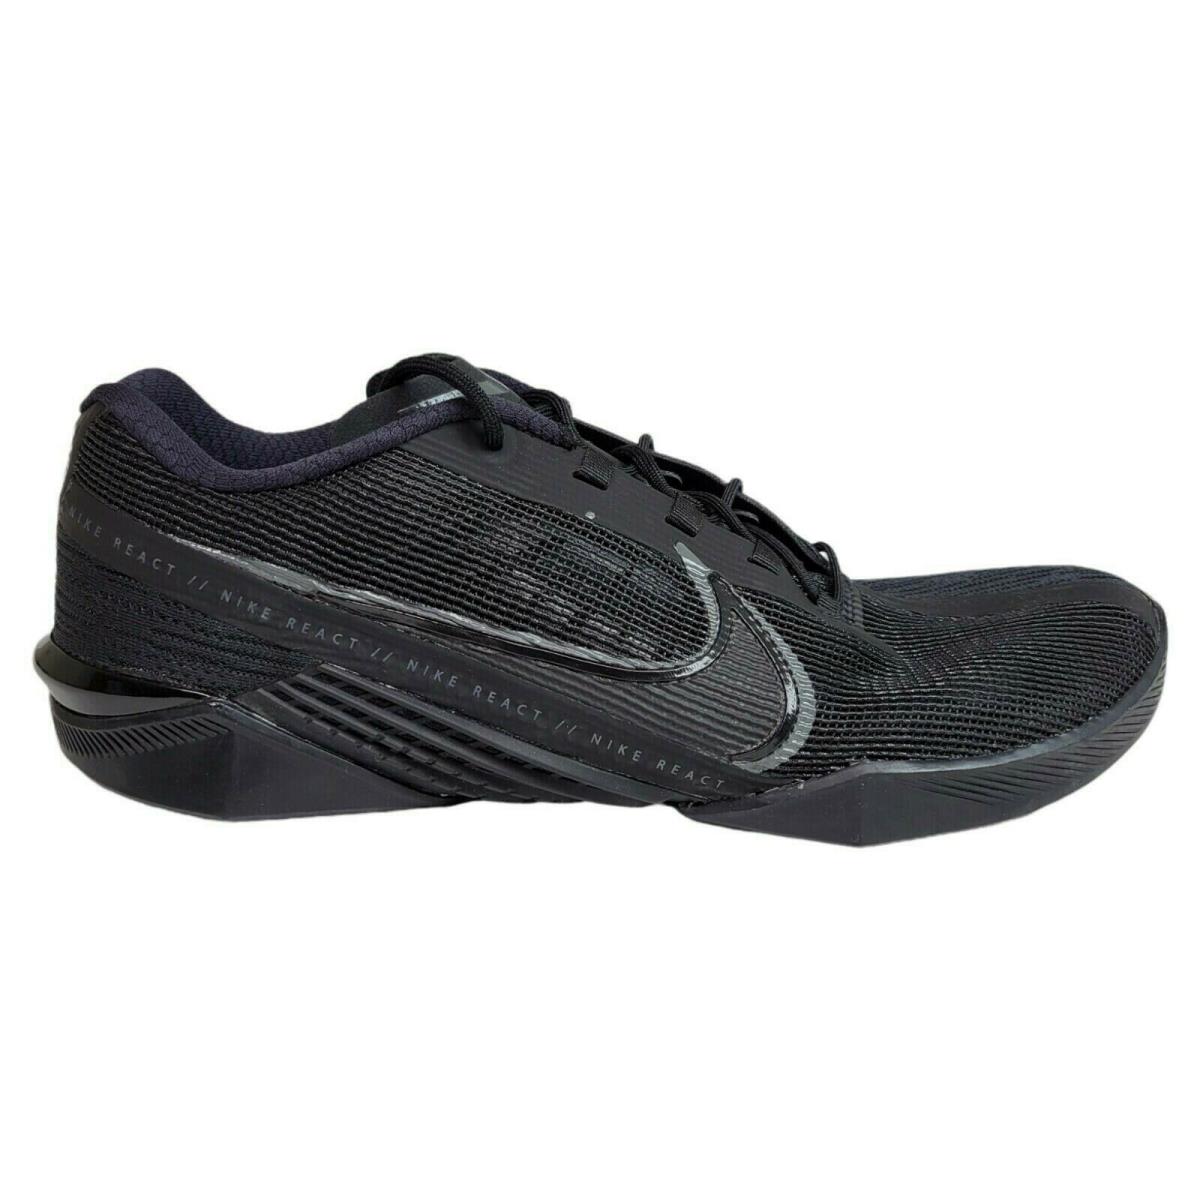 Nike Mens React Metcon Turbo Triple Black Training Crossfit Shoes CT1243-002